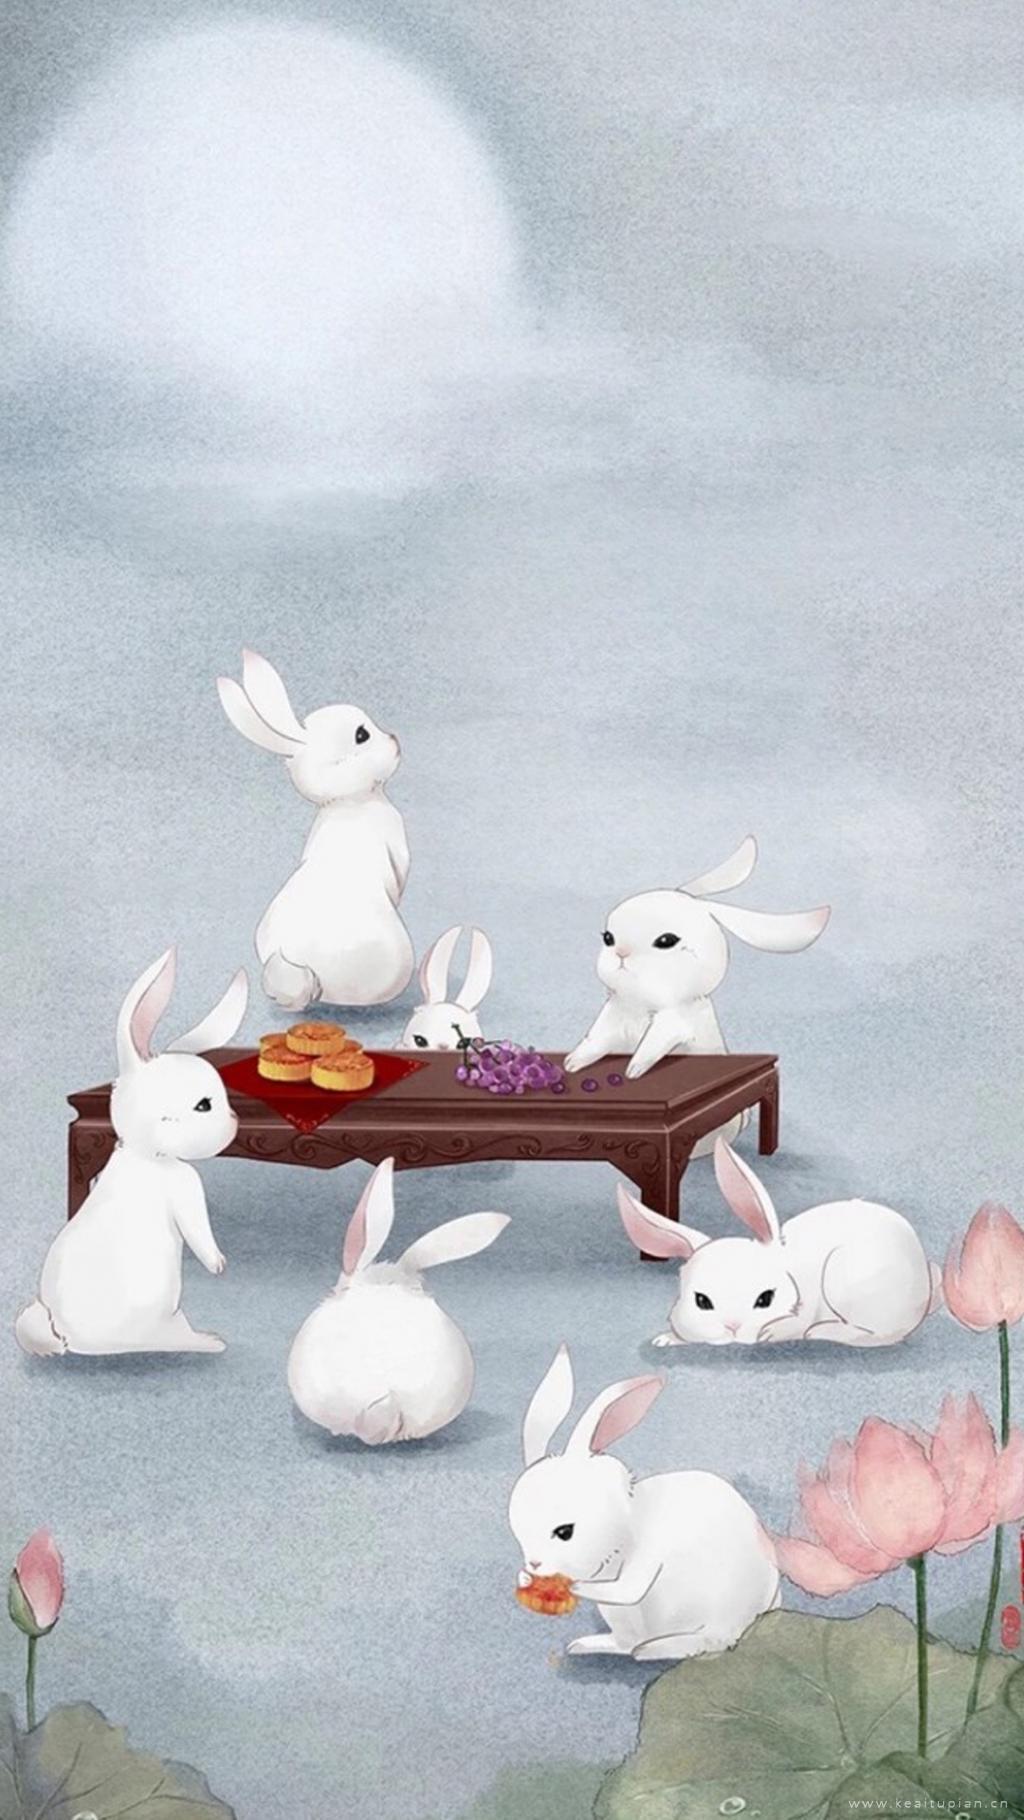 中秋主题可爱小白兔唯美高清手机壁纸图片